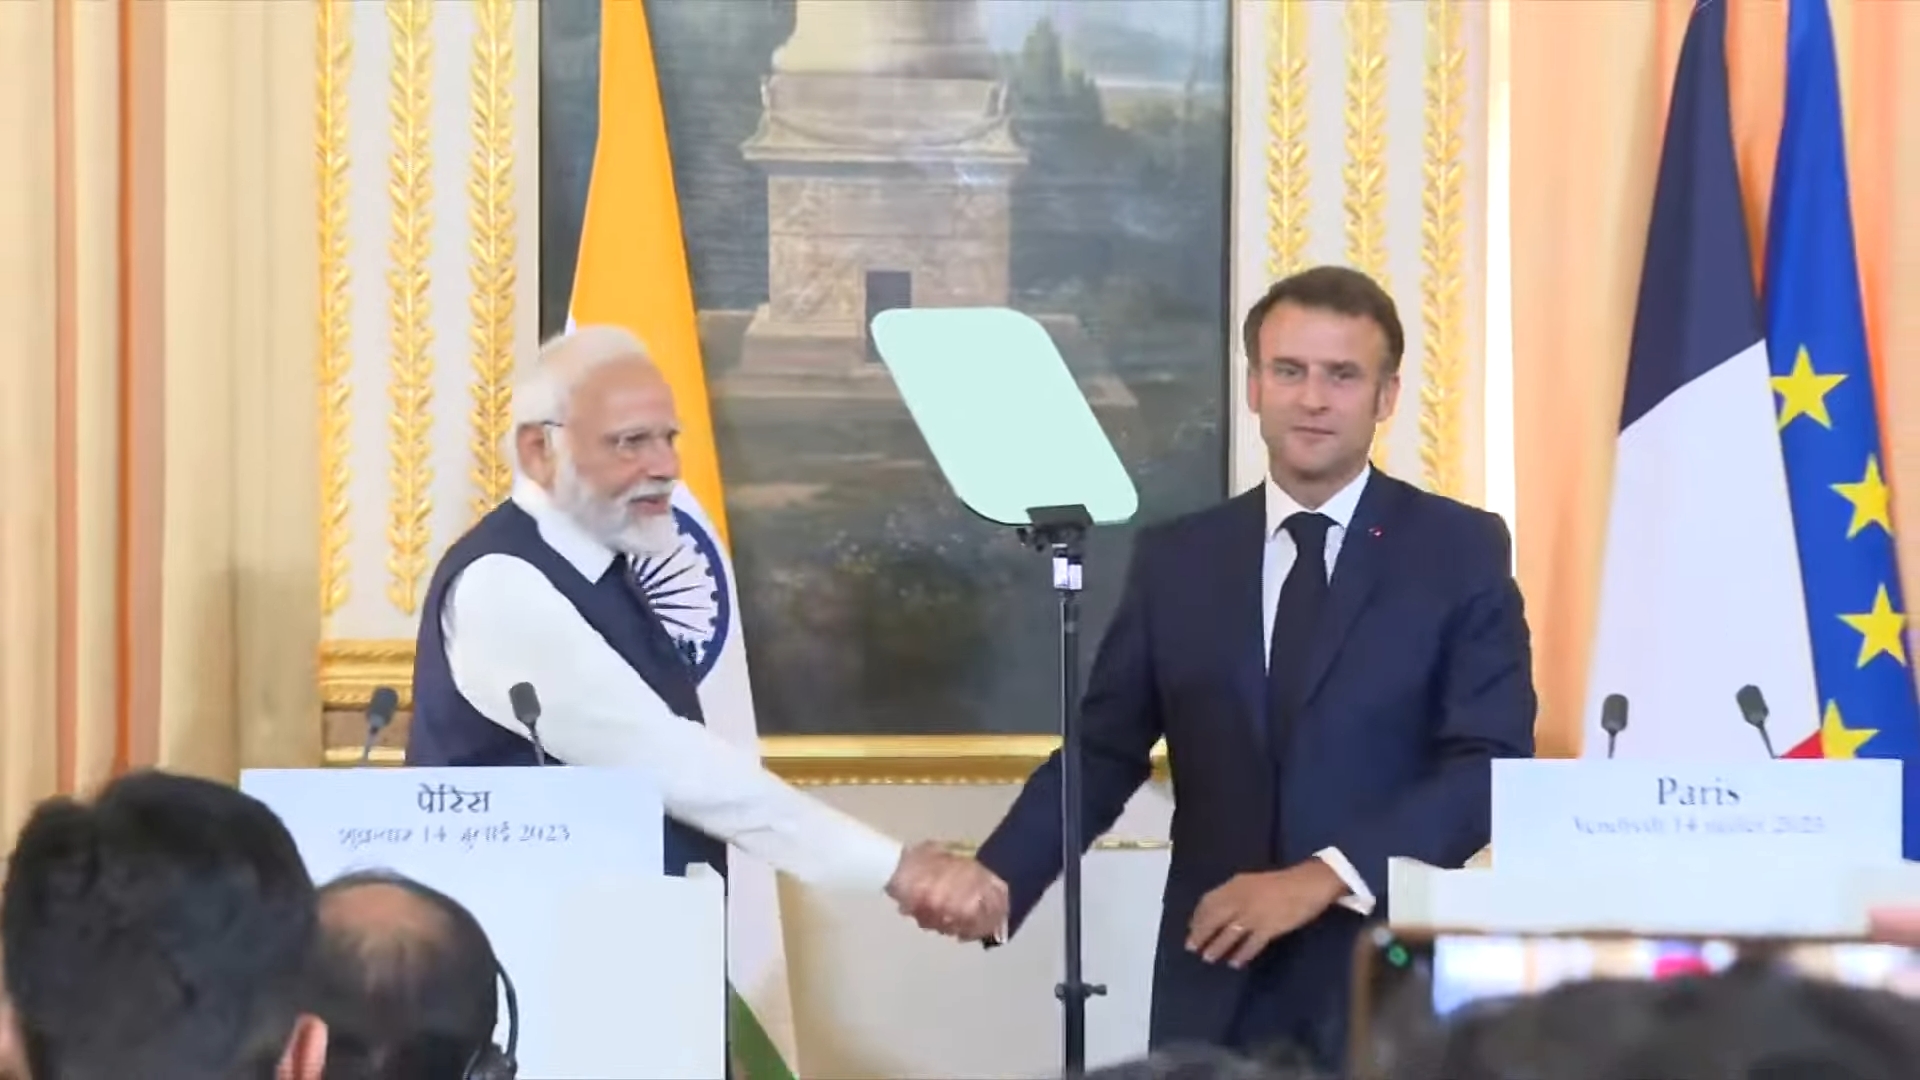 रक्षा संबंध द्विपक्षीय संबंधों का एक मजबूत स्तंभ, फ्रांस 'मेक इन इंडिया' में एक महत्वपूर्ण भागीदार: पीएम मोदी